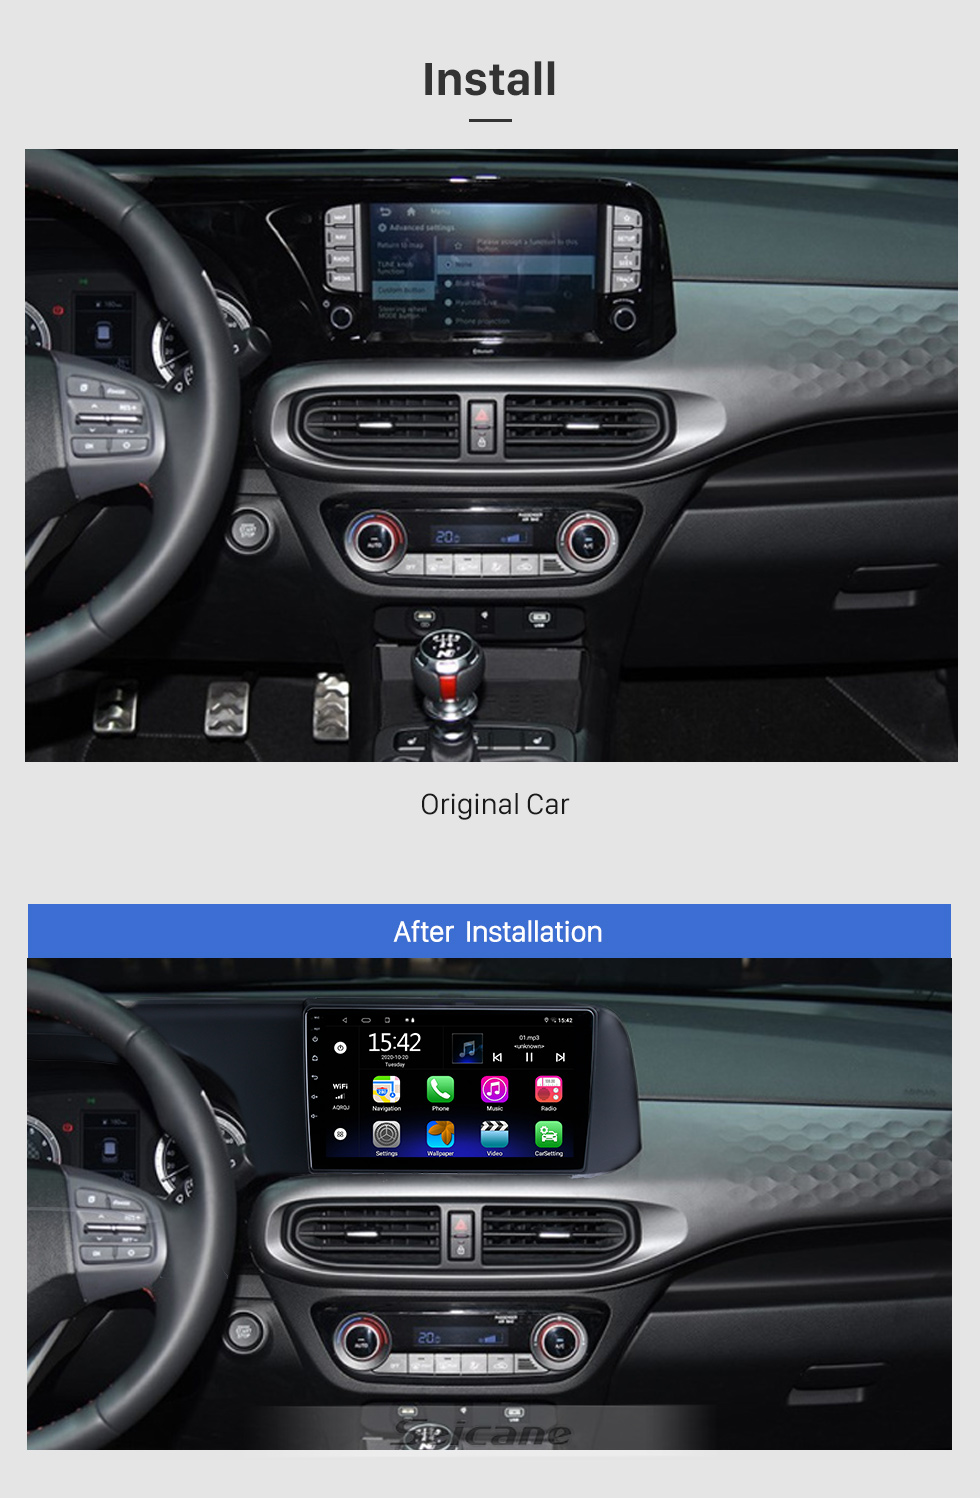 Seicane Для 2020 Hyundai IX25 / CRETA Android 10.0 HD с сенсорным экраном 9-дюймовая система GPS-навигации с поддержкой WIFI Bluetooth Carplay DVR